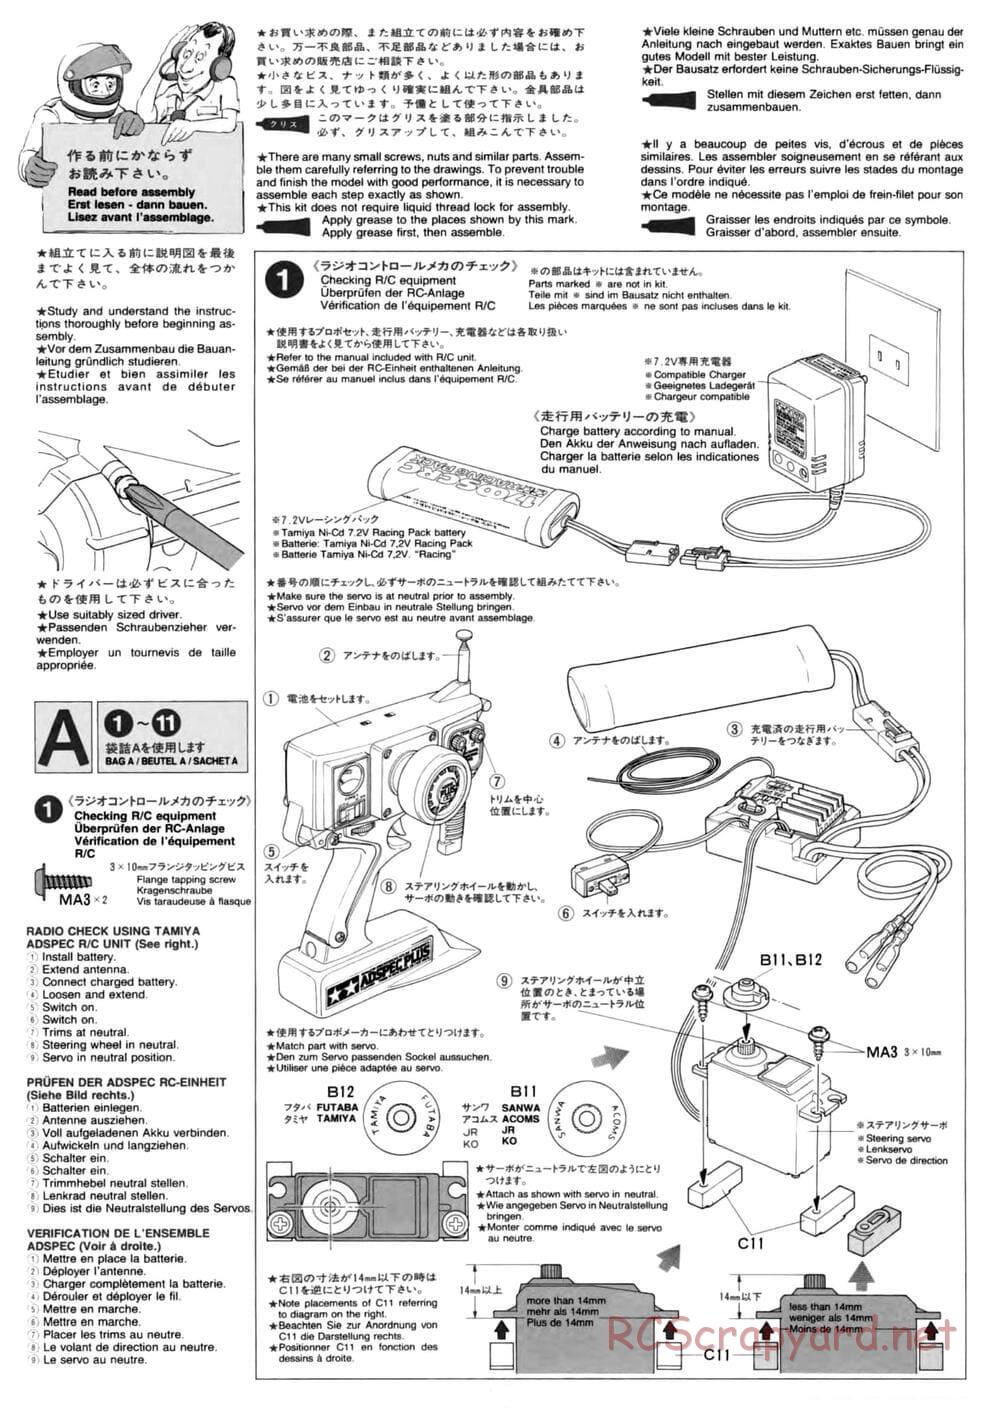 Tamiya - TL-01 Chassis - Manual - Page 4